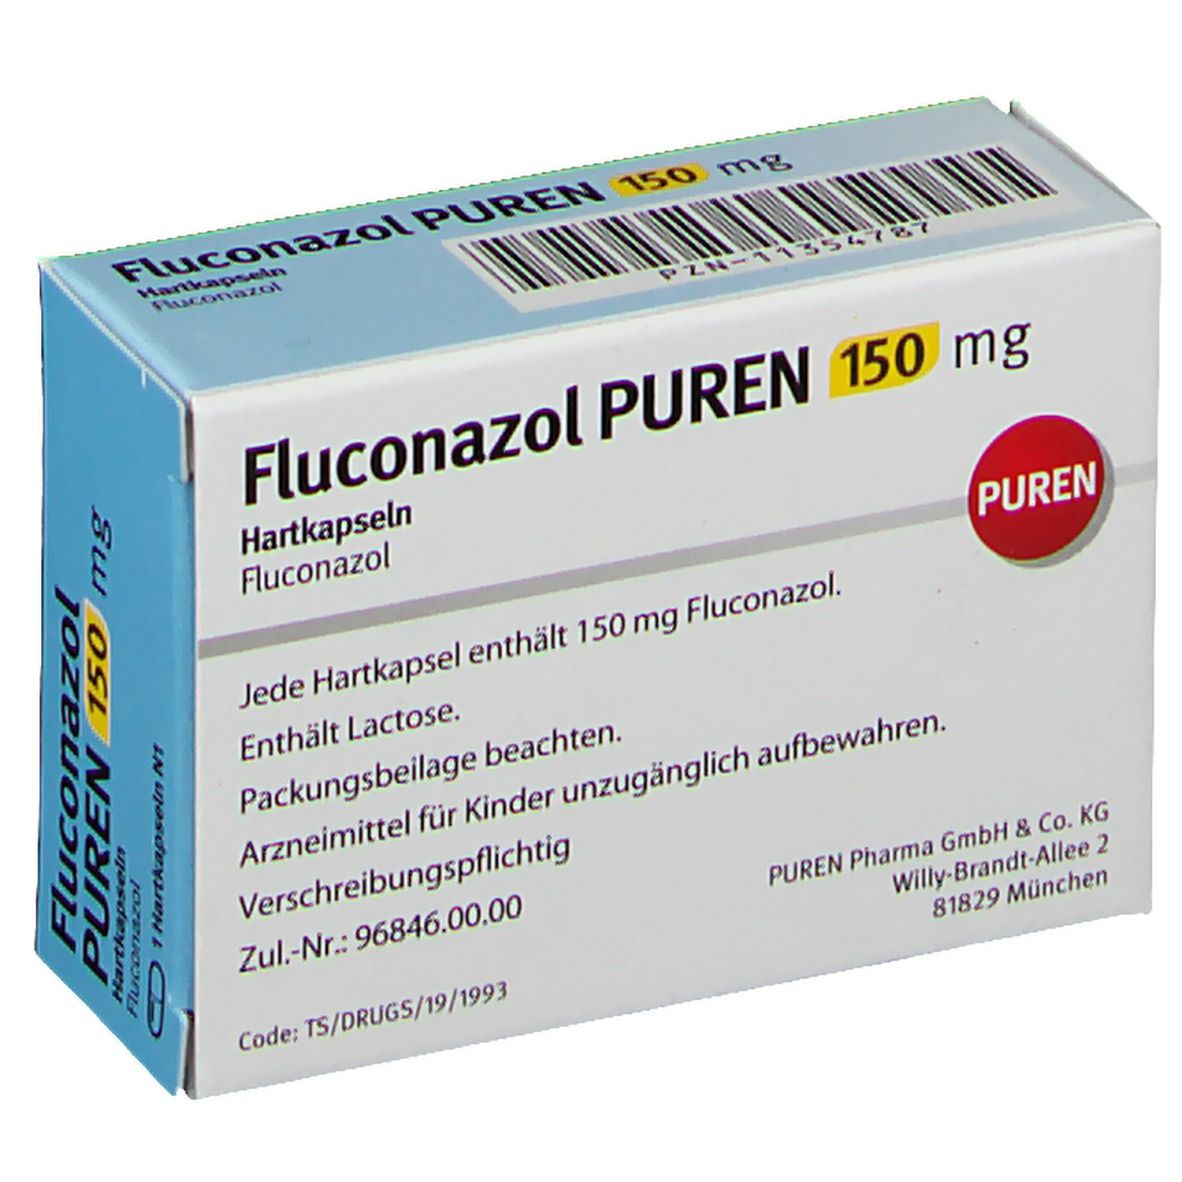 Fluconazol PUREN 150 mg